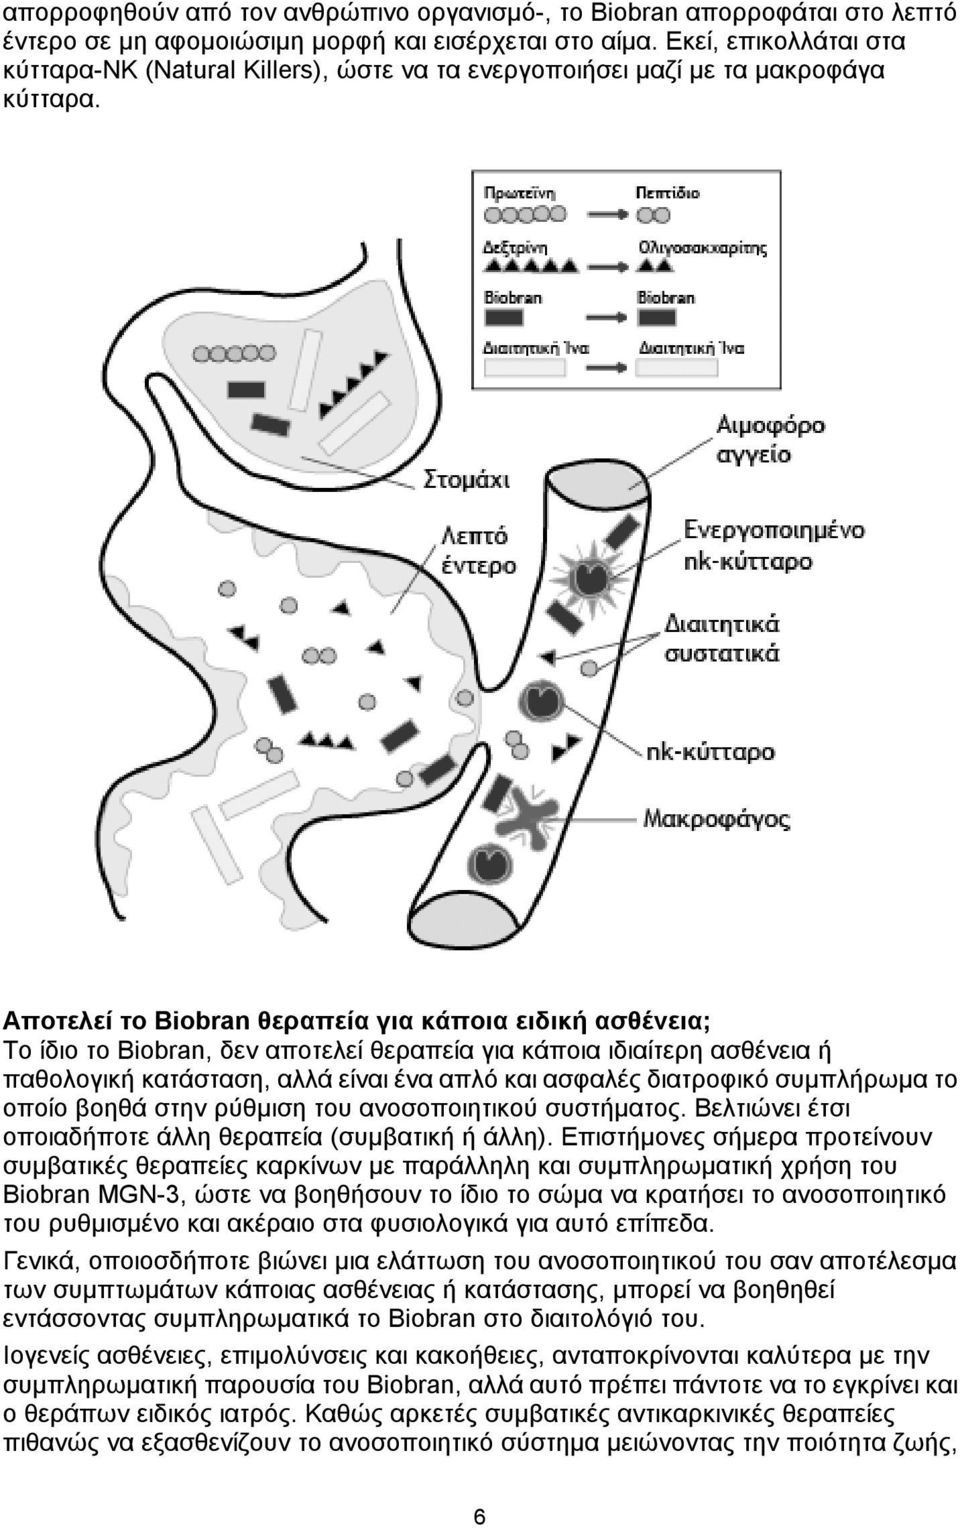 Αποτελεί το Biobran θεραπεία για κάποια ειδική ασθένεια; Το ίδιο το Biobran, δεν αποτελεί θεραπεία για κάποια ιδιαίτερη ασθένεια ή παθολογική κατάσταση, αλλά είναι ένα απλό και ασφαλές διατροφικό